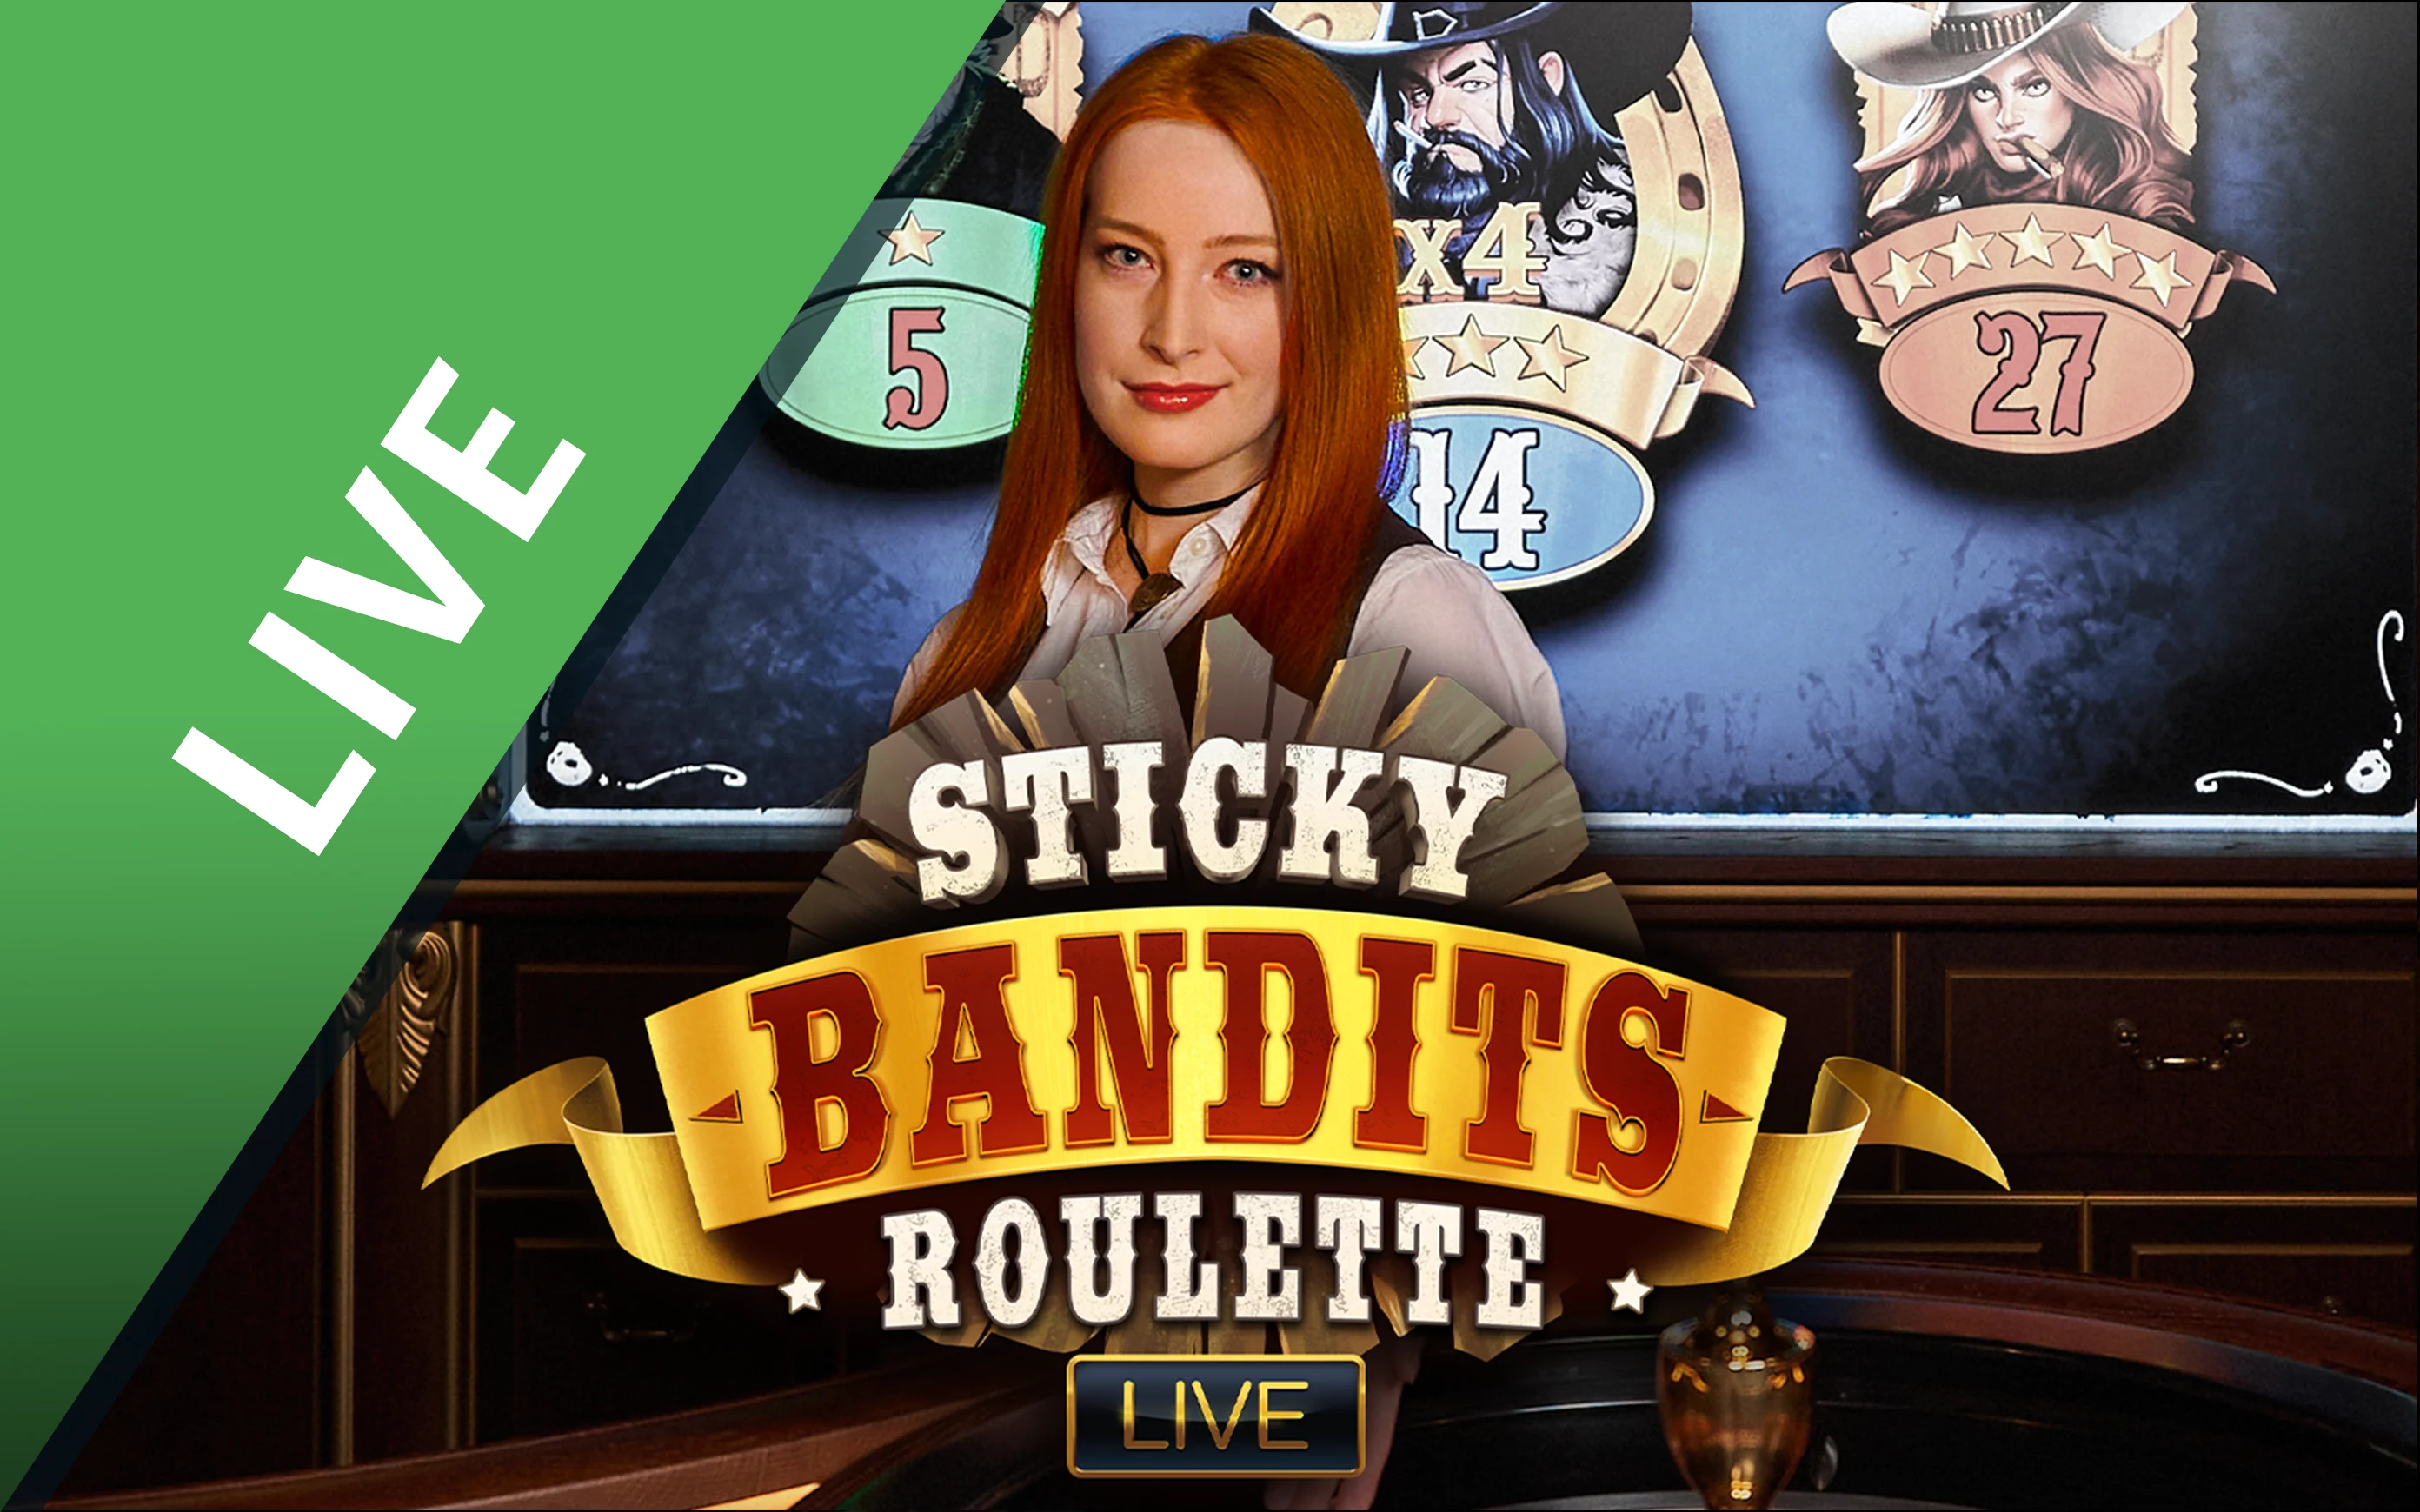 Gioca a Sticky Bandits Roulette sul casino online Starcasino.be